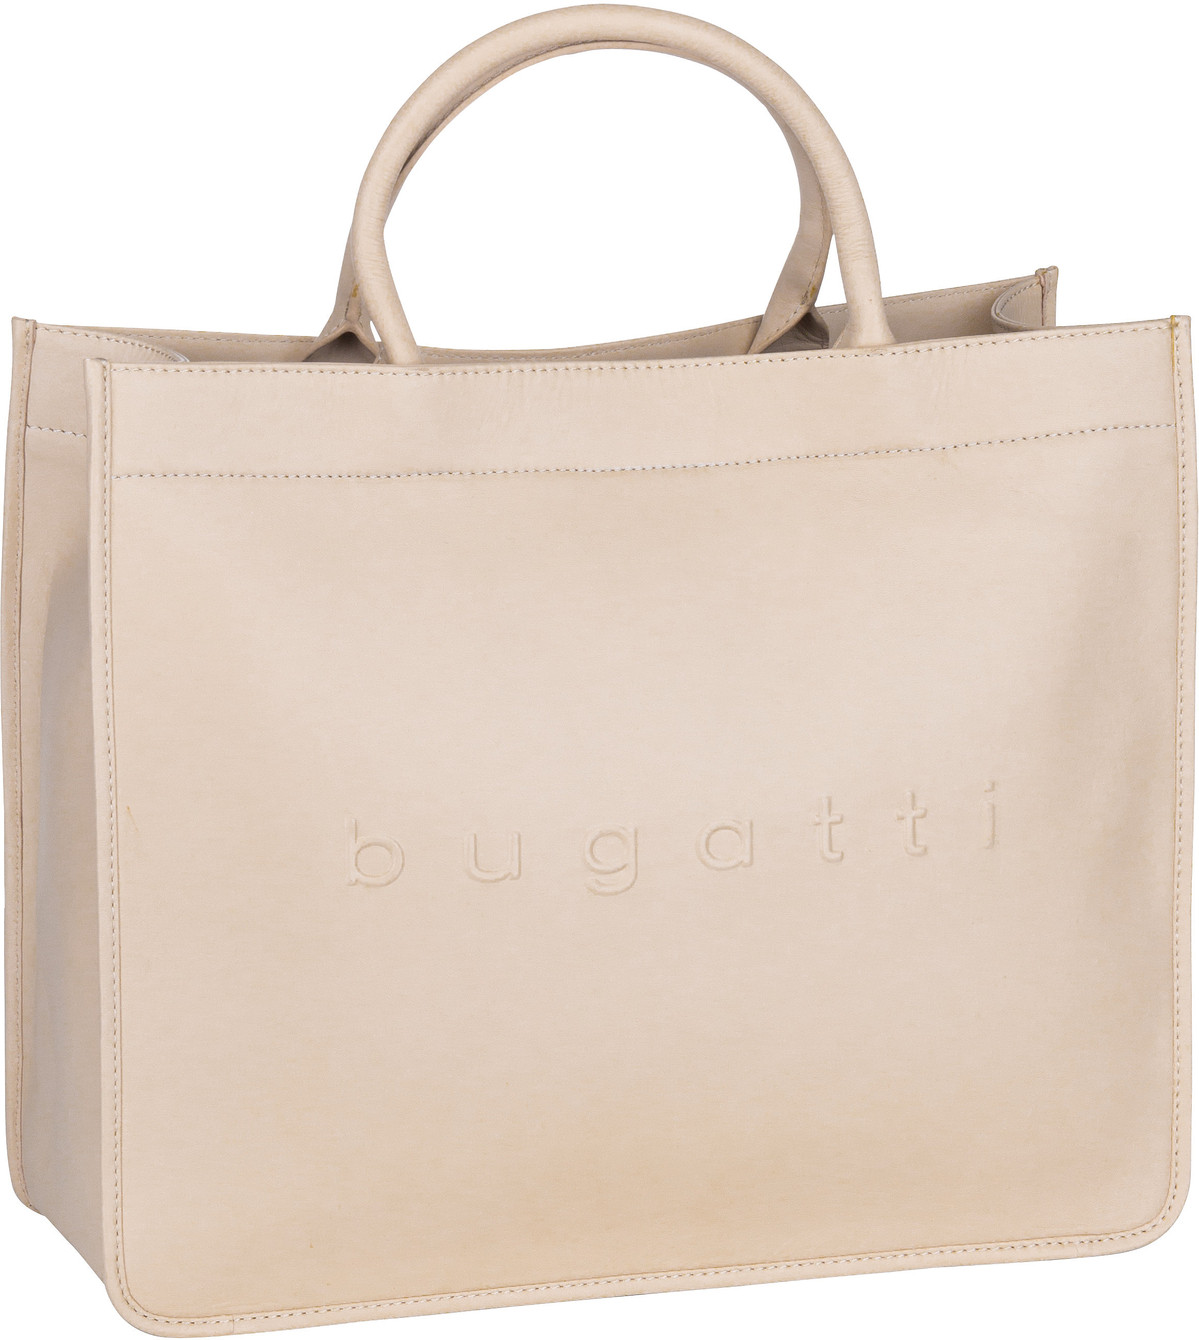 Bugatti Daphne Tote Bag  in Beige (23.2 Liter), Handtasche